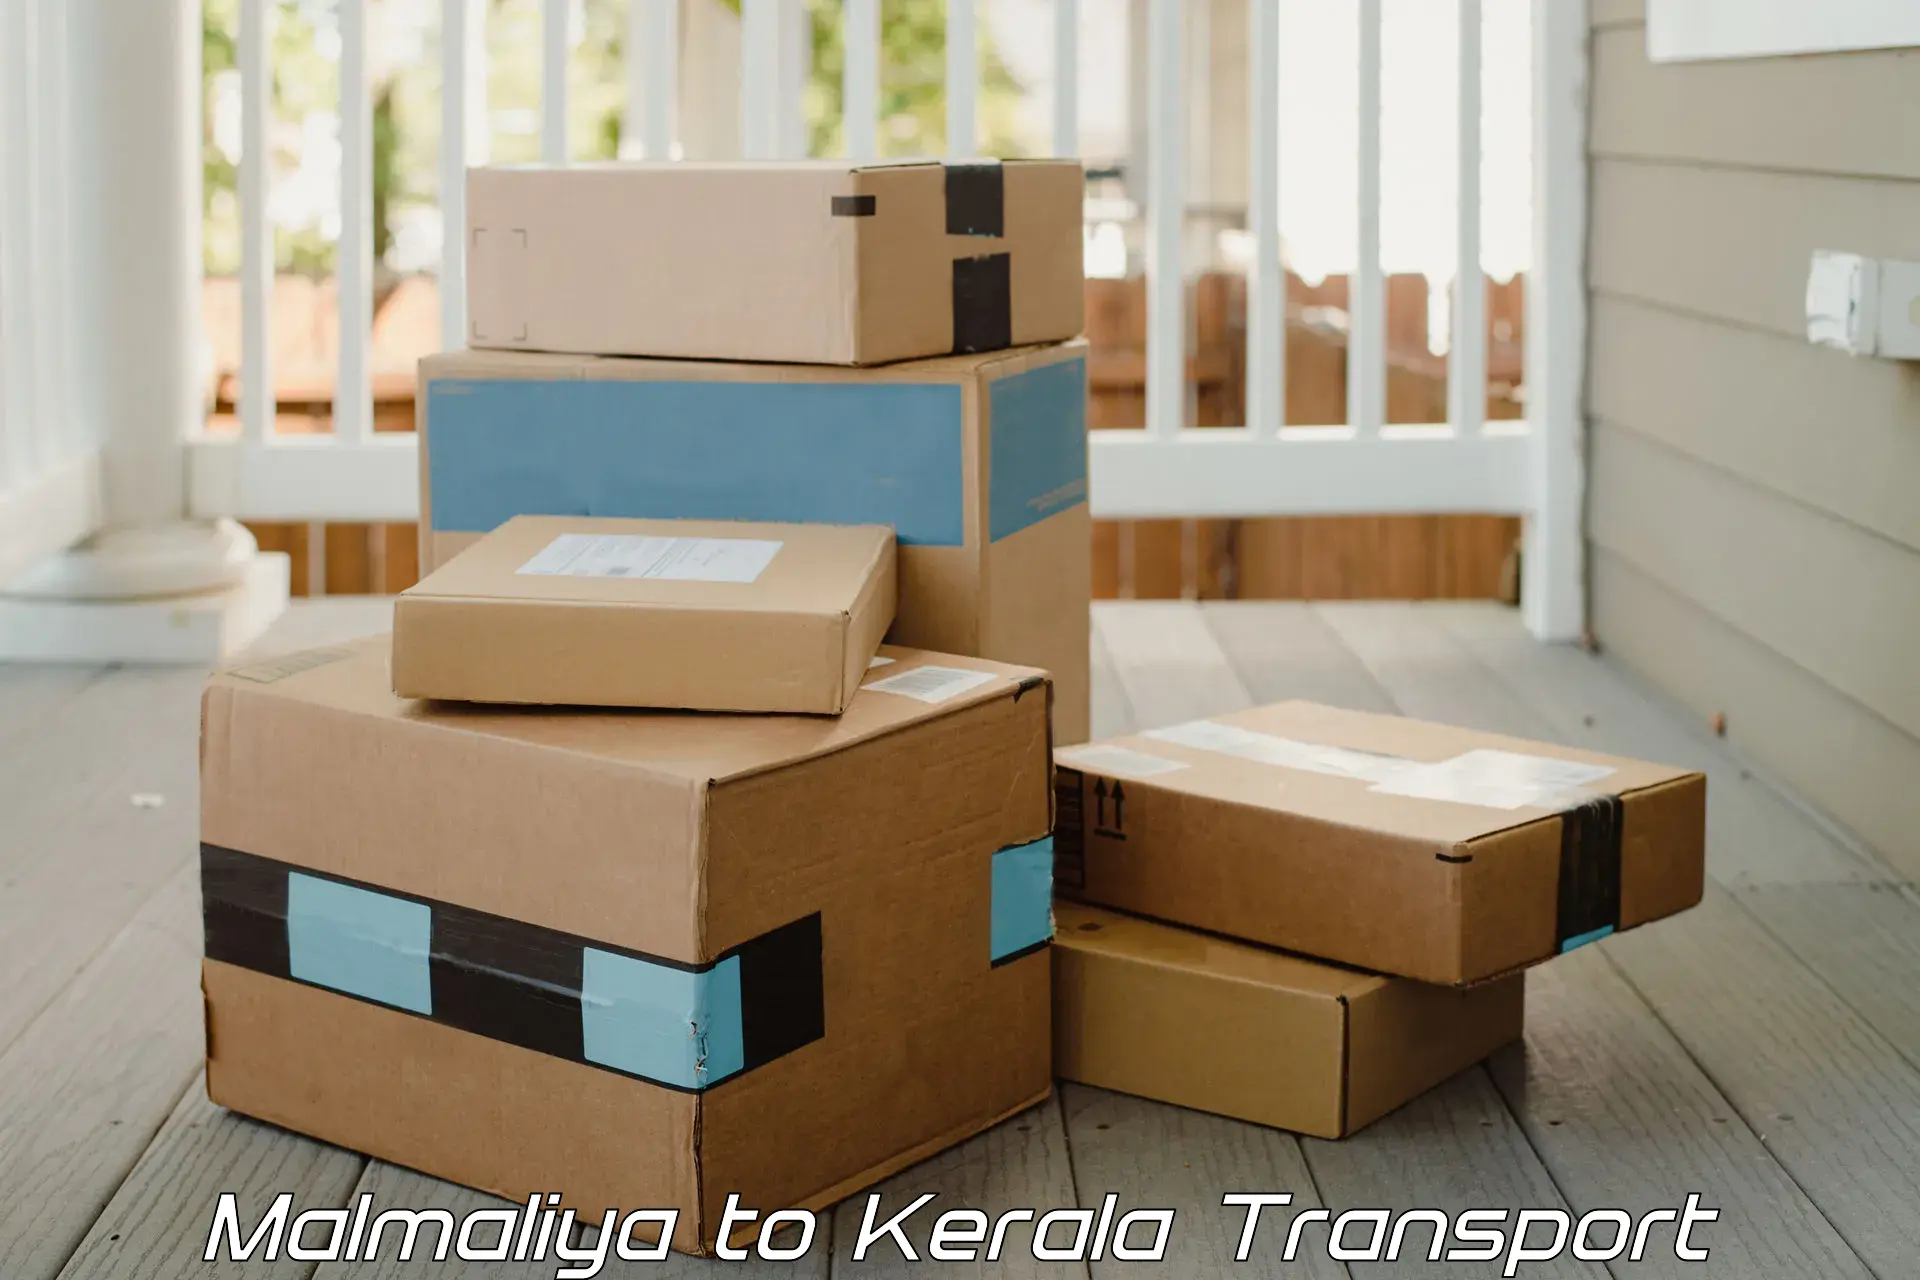 Lorry transport service Malmaliya to Manthuka